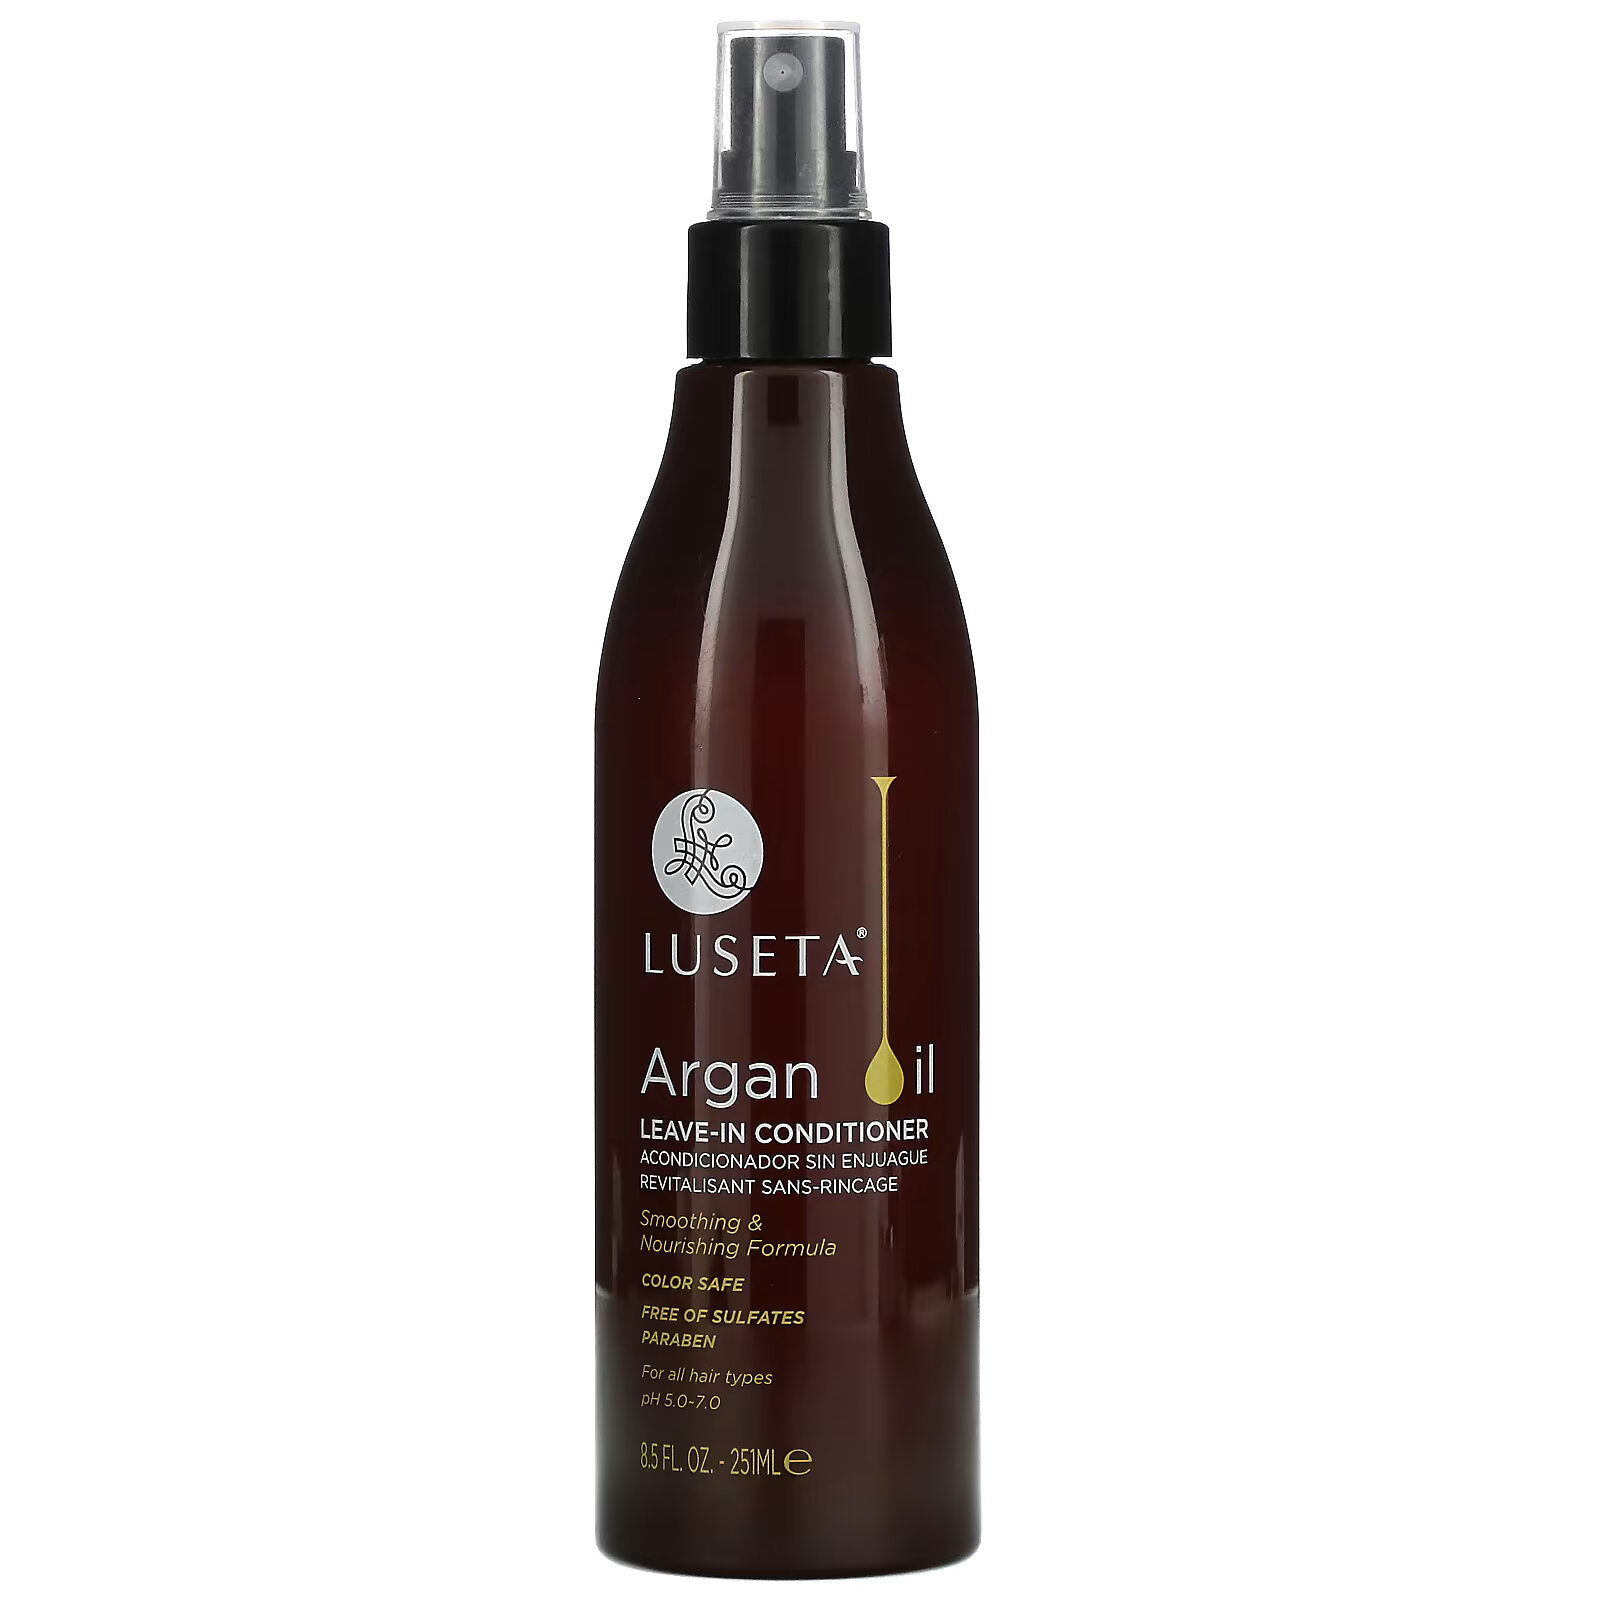 Luseta Beauty, Несмываемый кондиционер с аргановым маслом, для всех типов волос, 251 мл (8,5 жидк. Унции) luseta beauty масло чайного дерева и арганы несмываемый кондиционер для поврежденных и жирных волос 251 мл 8 5 жидк унции